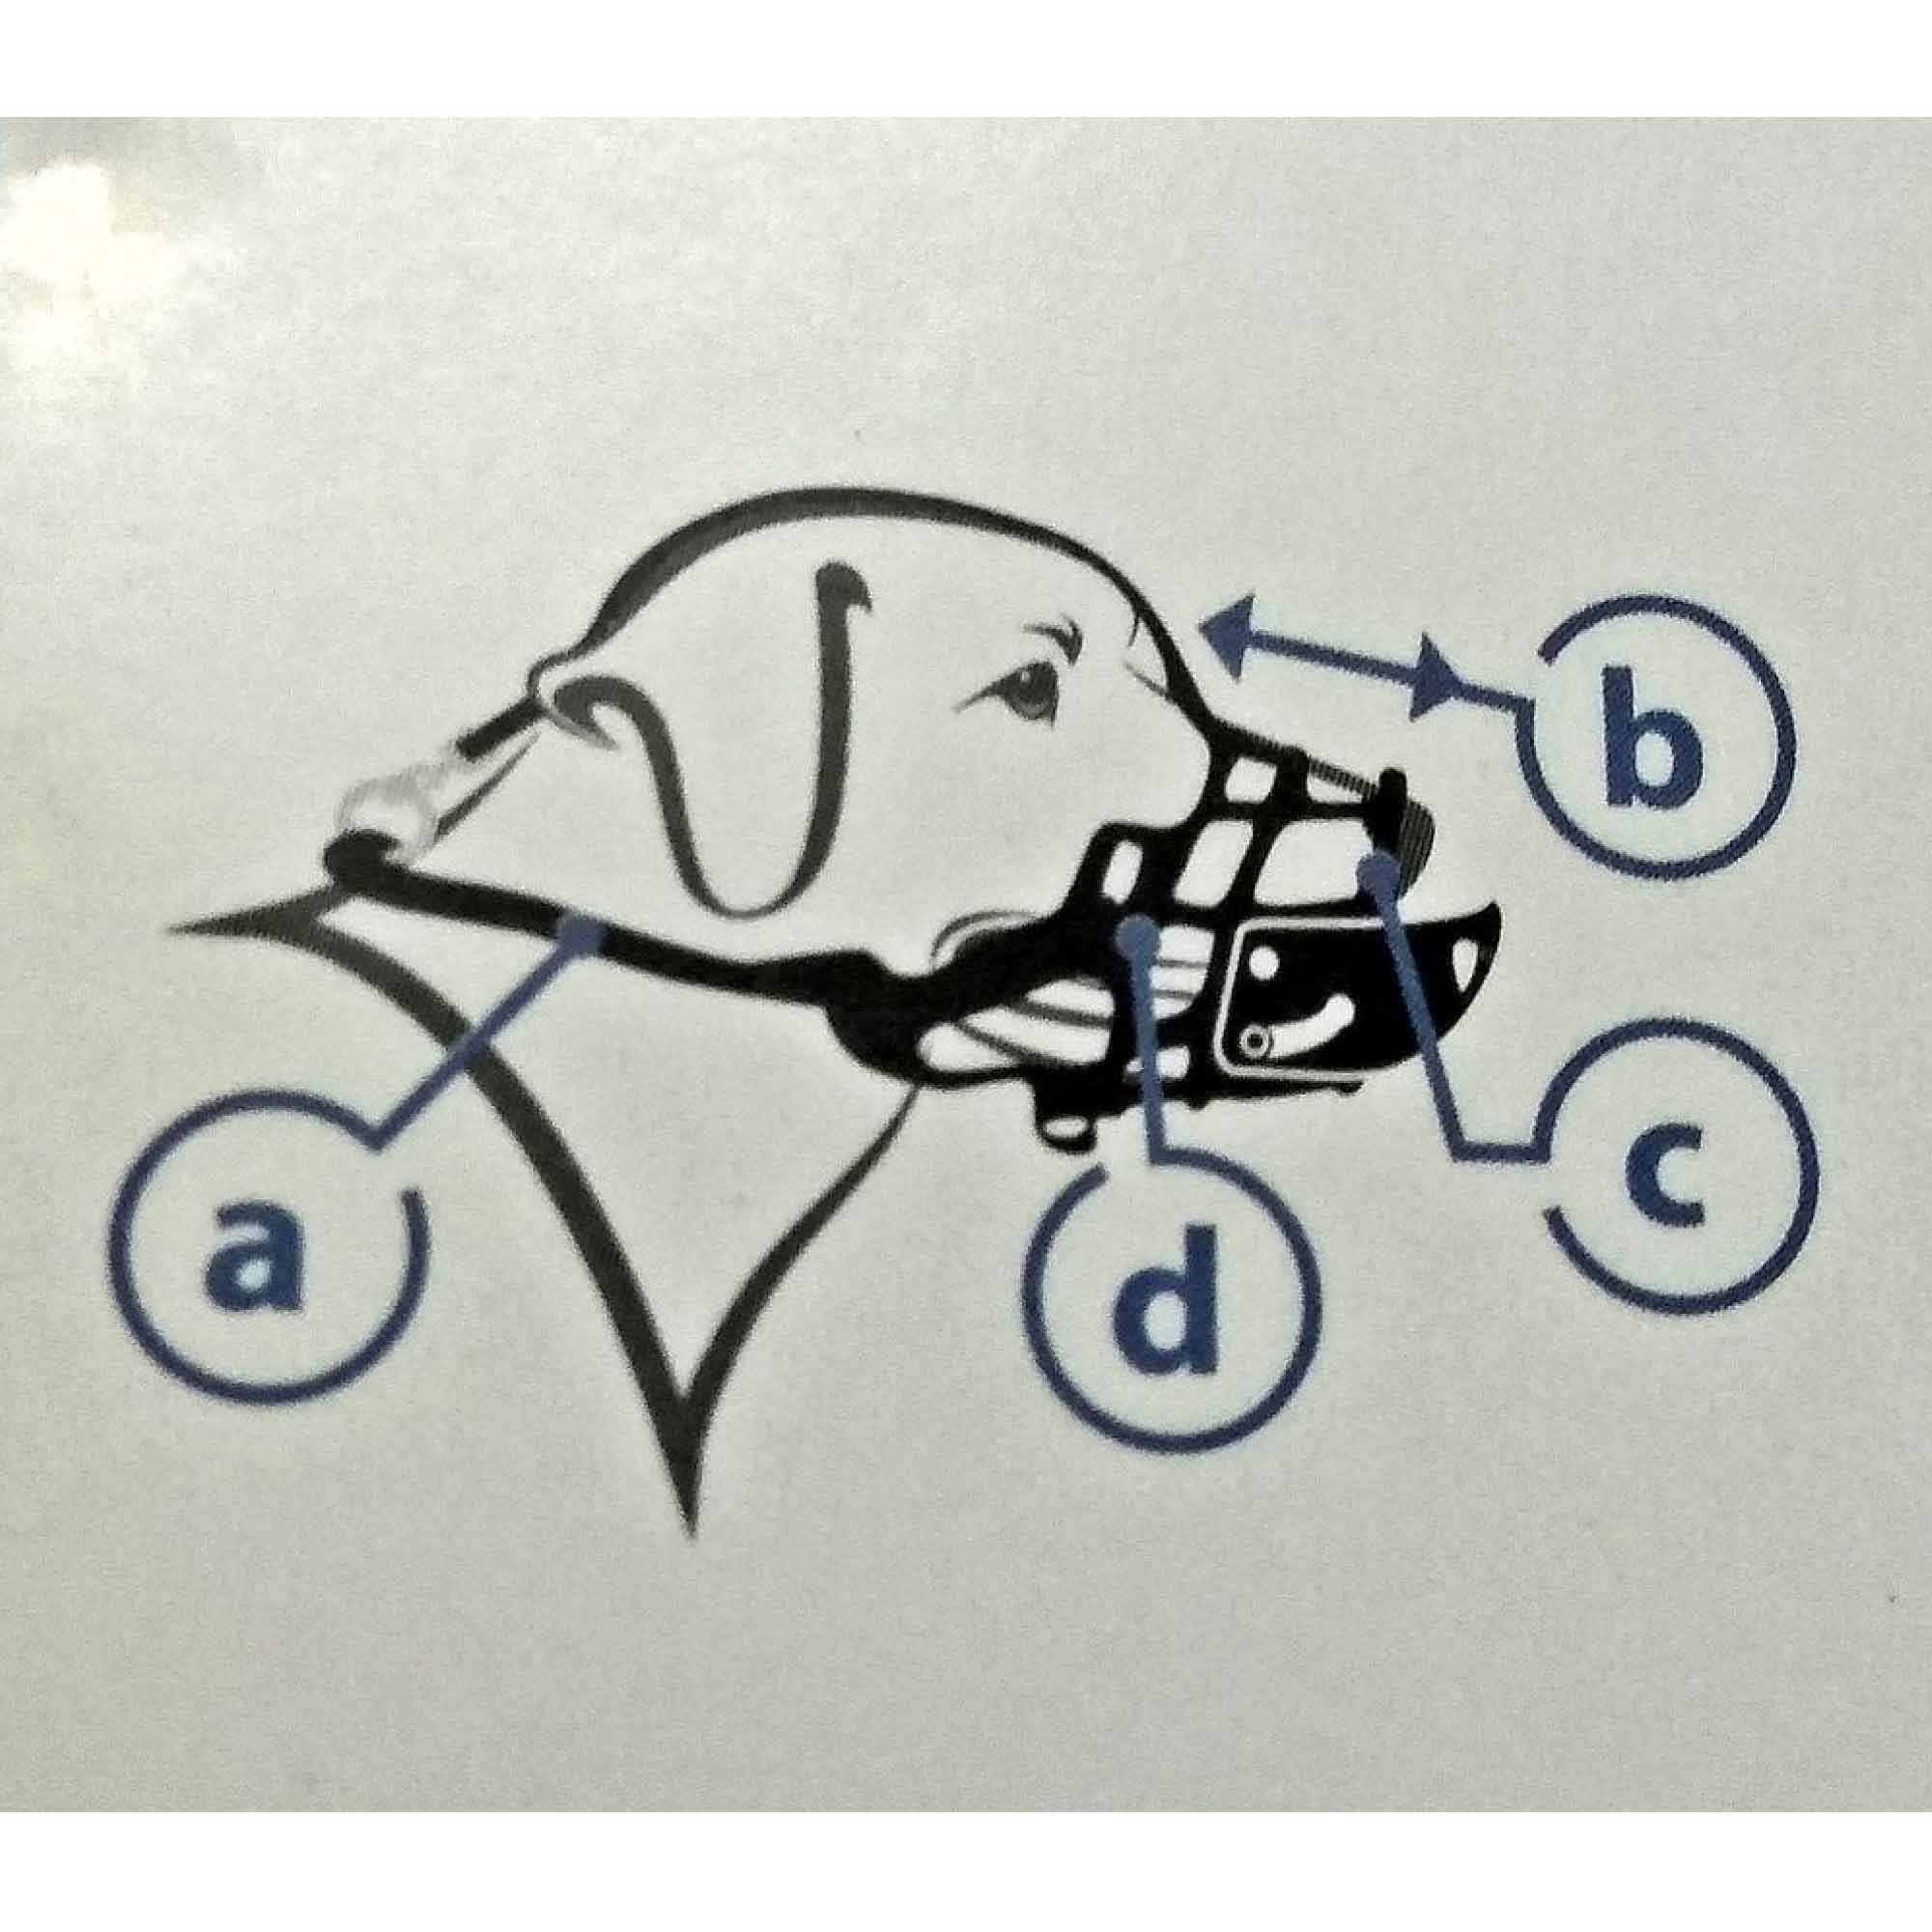 Soft Flexible Large Dog Muzzle - Anti Biting/Barking